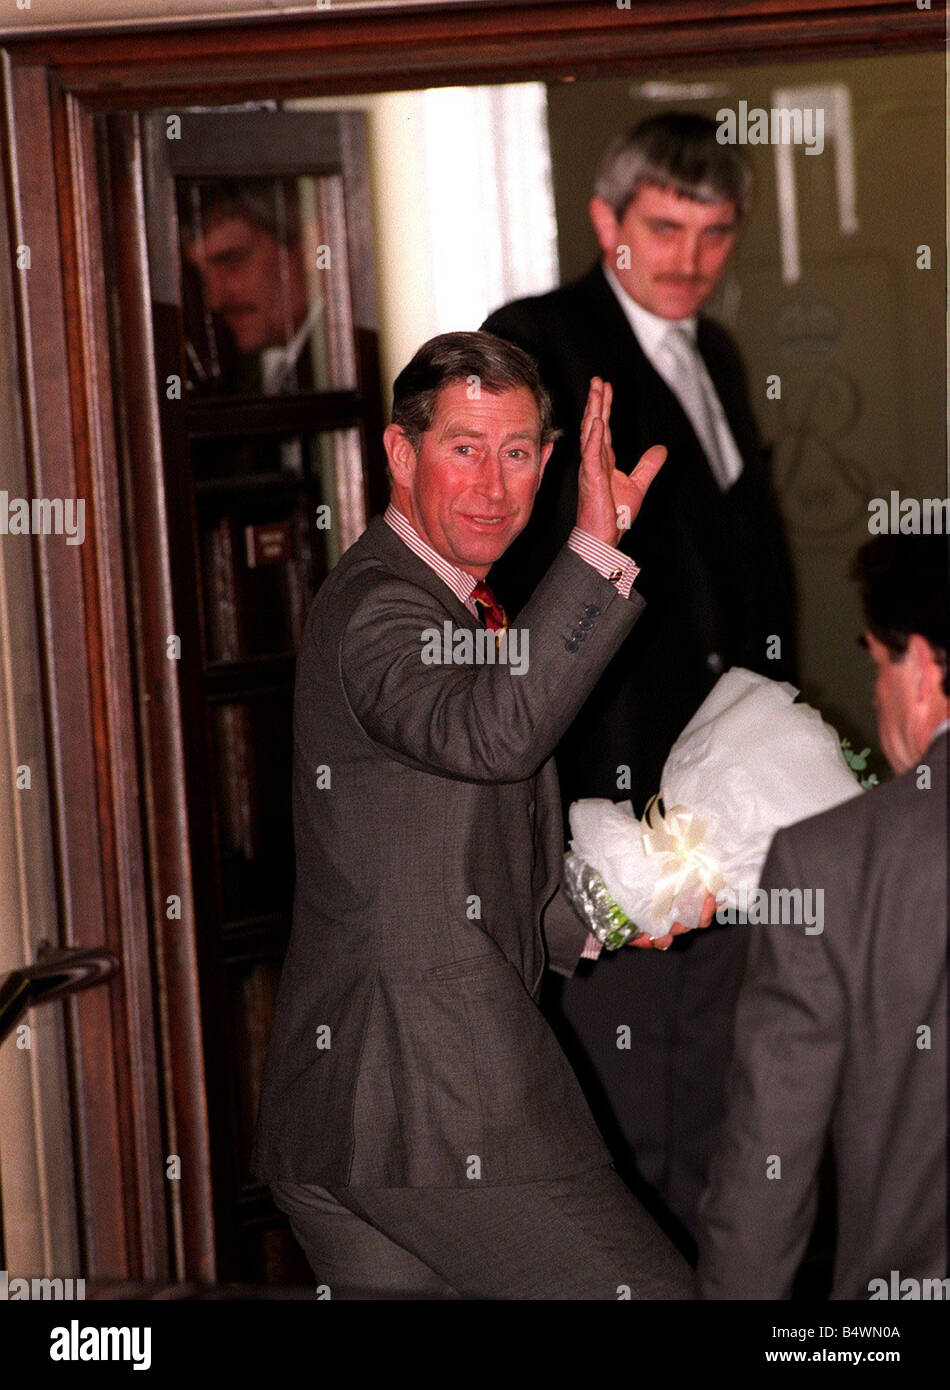 Prinz Charles Besuche der Königin-Mutter Januar 1998 Prinz Charles Welle außerhalb der King Edward VII Hospital in London nach dem Besuch der Königin-Mutter, die von ihrem zweiten Hüftoperation erholt Stockfoto